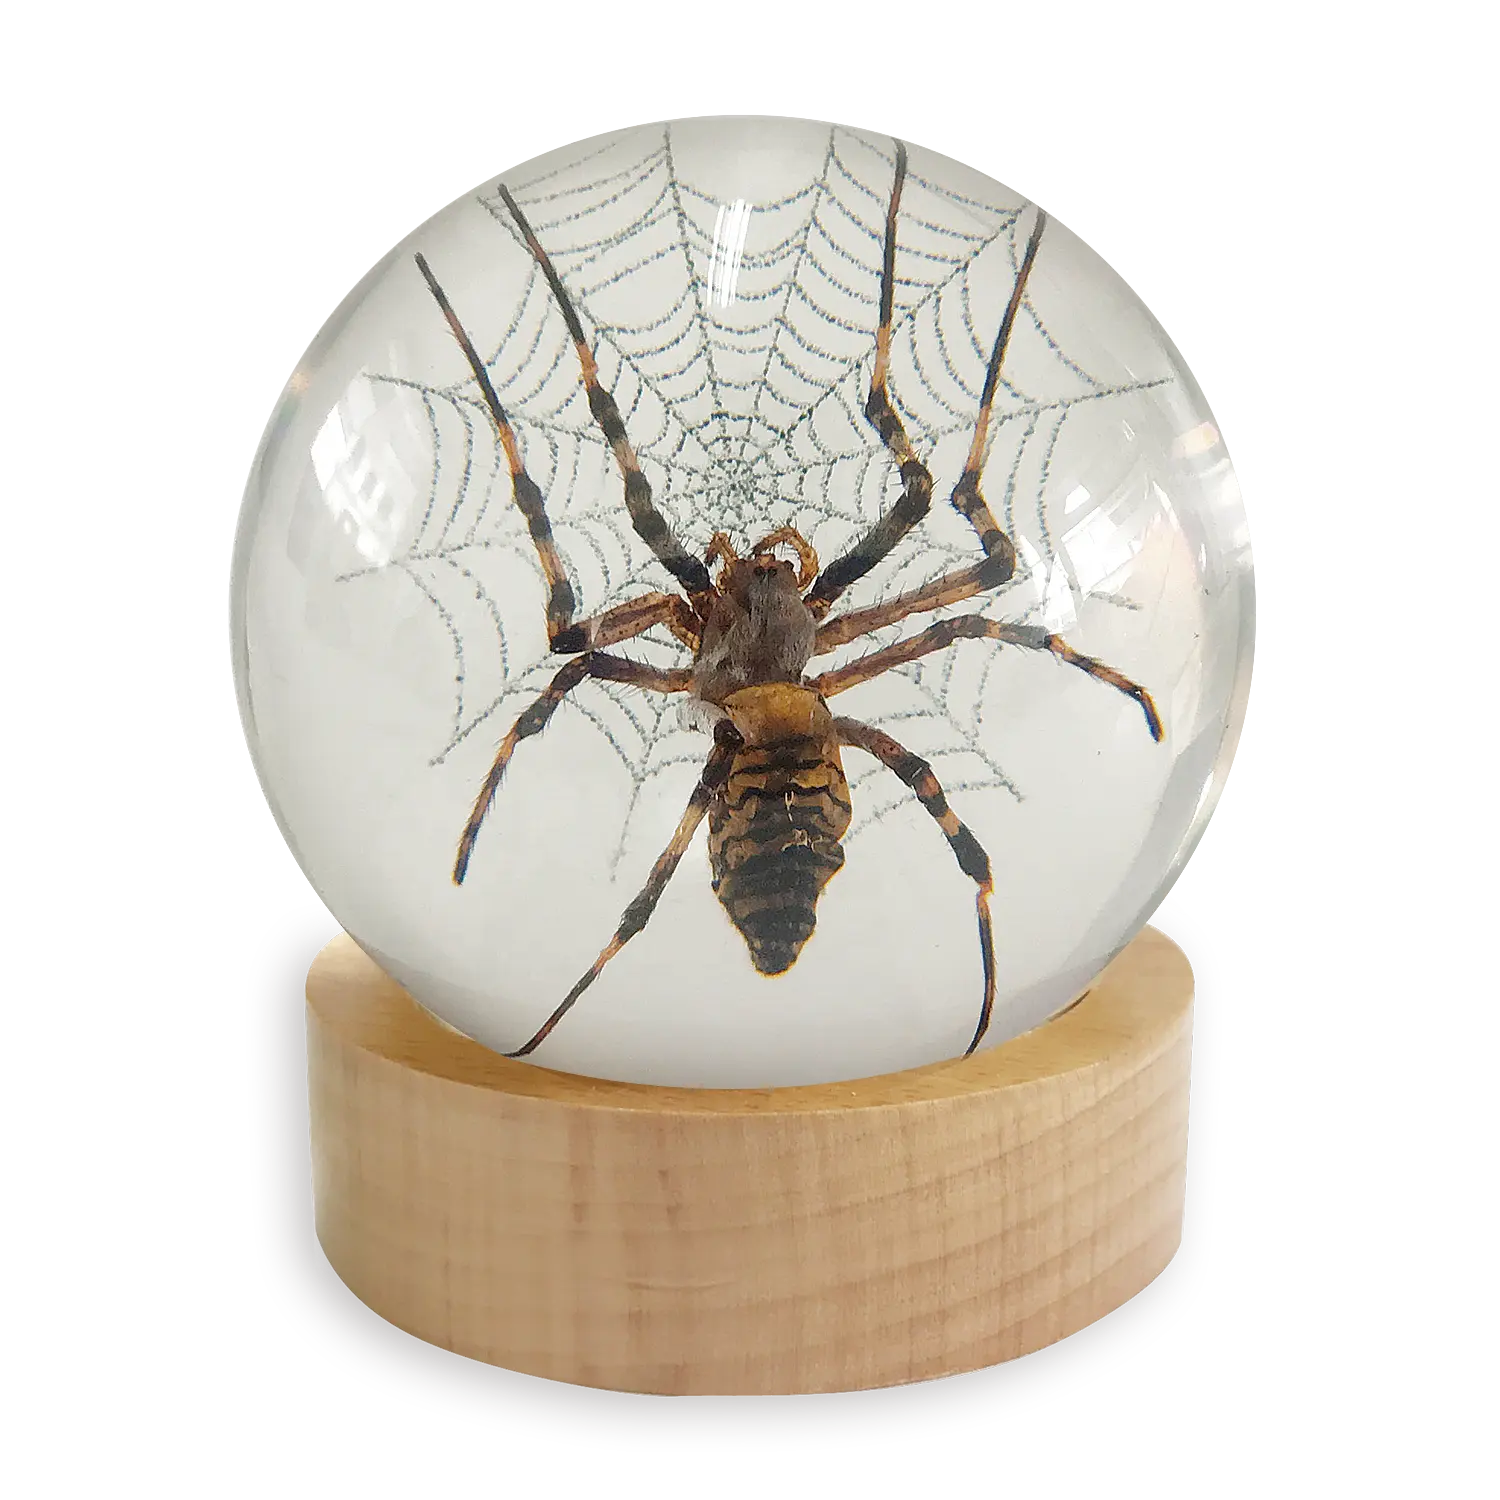 Resina epoxi transparente para decoración del hogar, todo tipo de artesanías, insectos en resina, con espécimen real integrado en